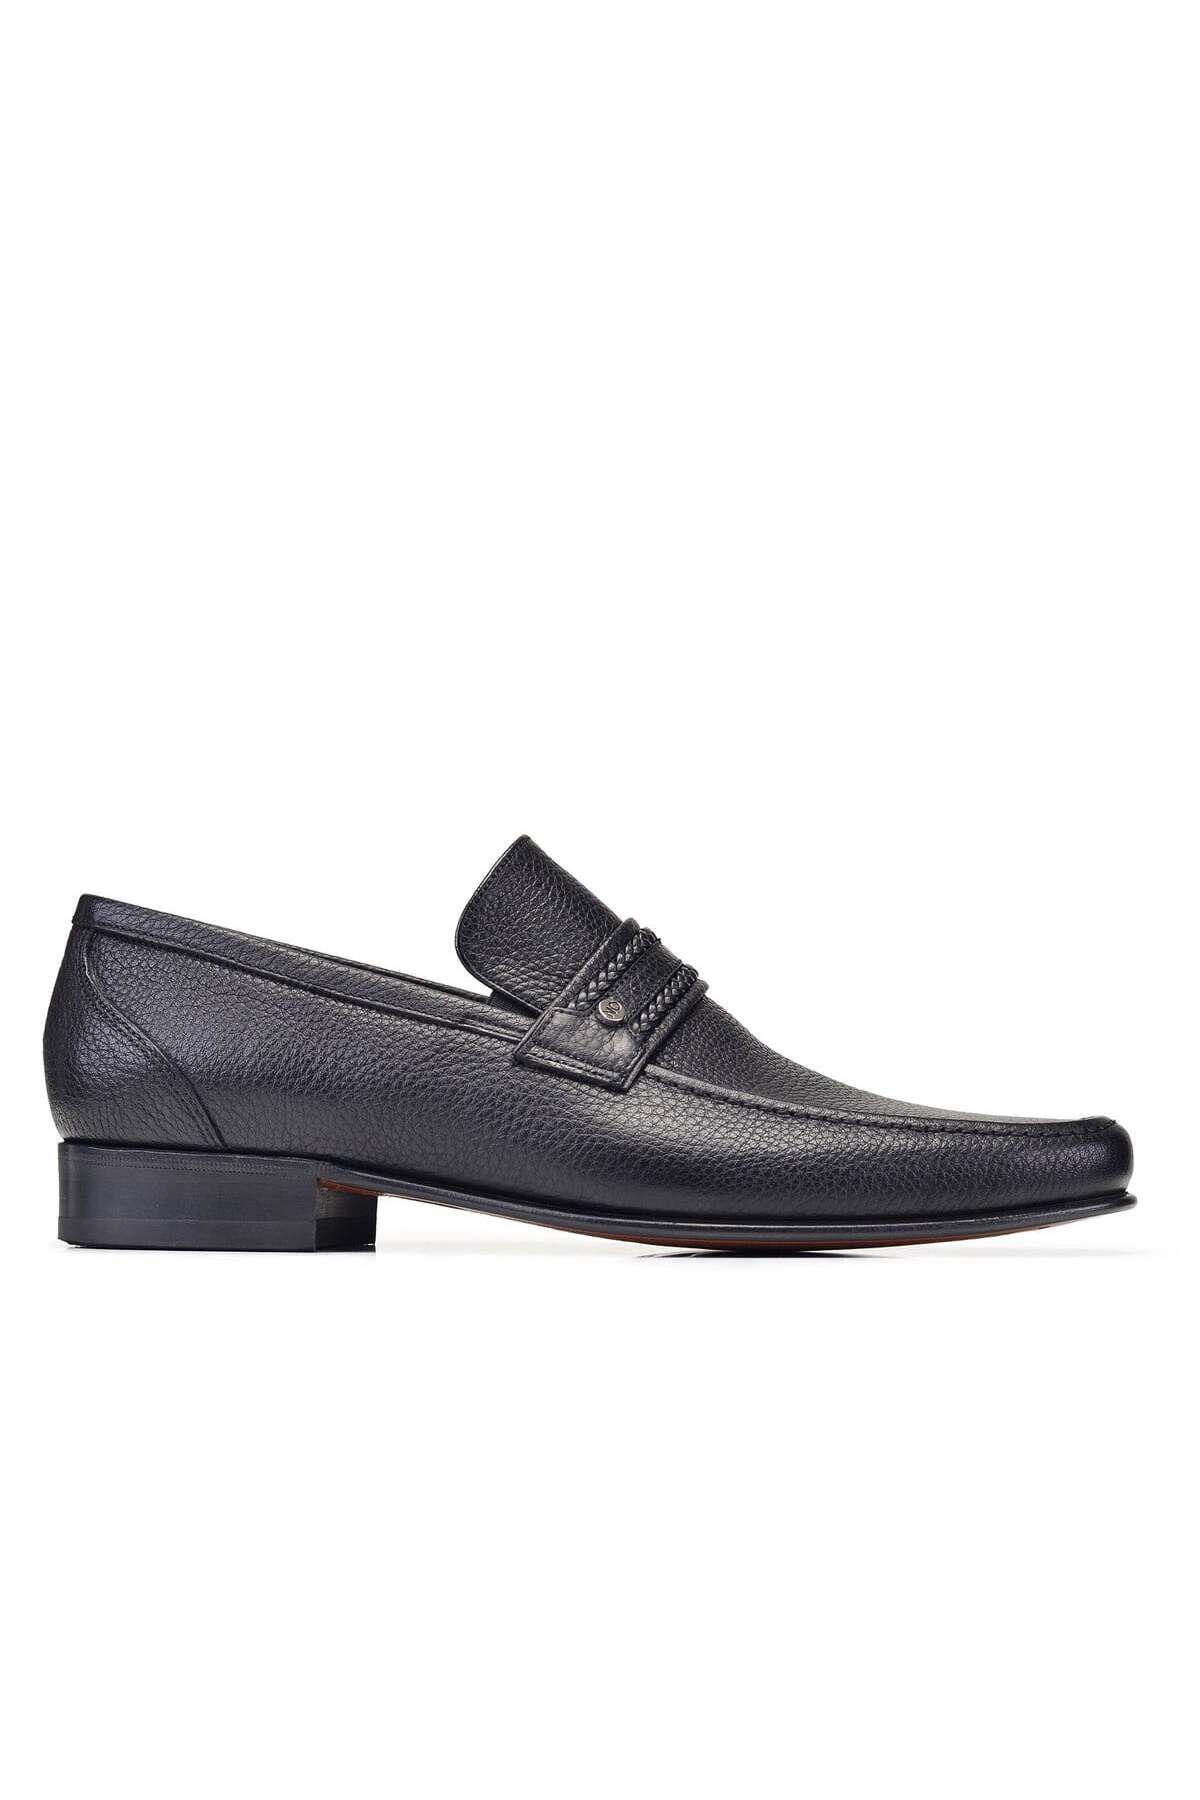 Nevzat Onay Siyah Klasik Loafer Kösele Erkek Ayakkabı -7009-